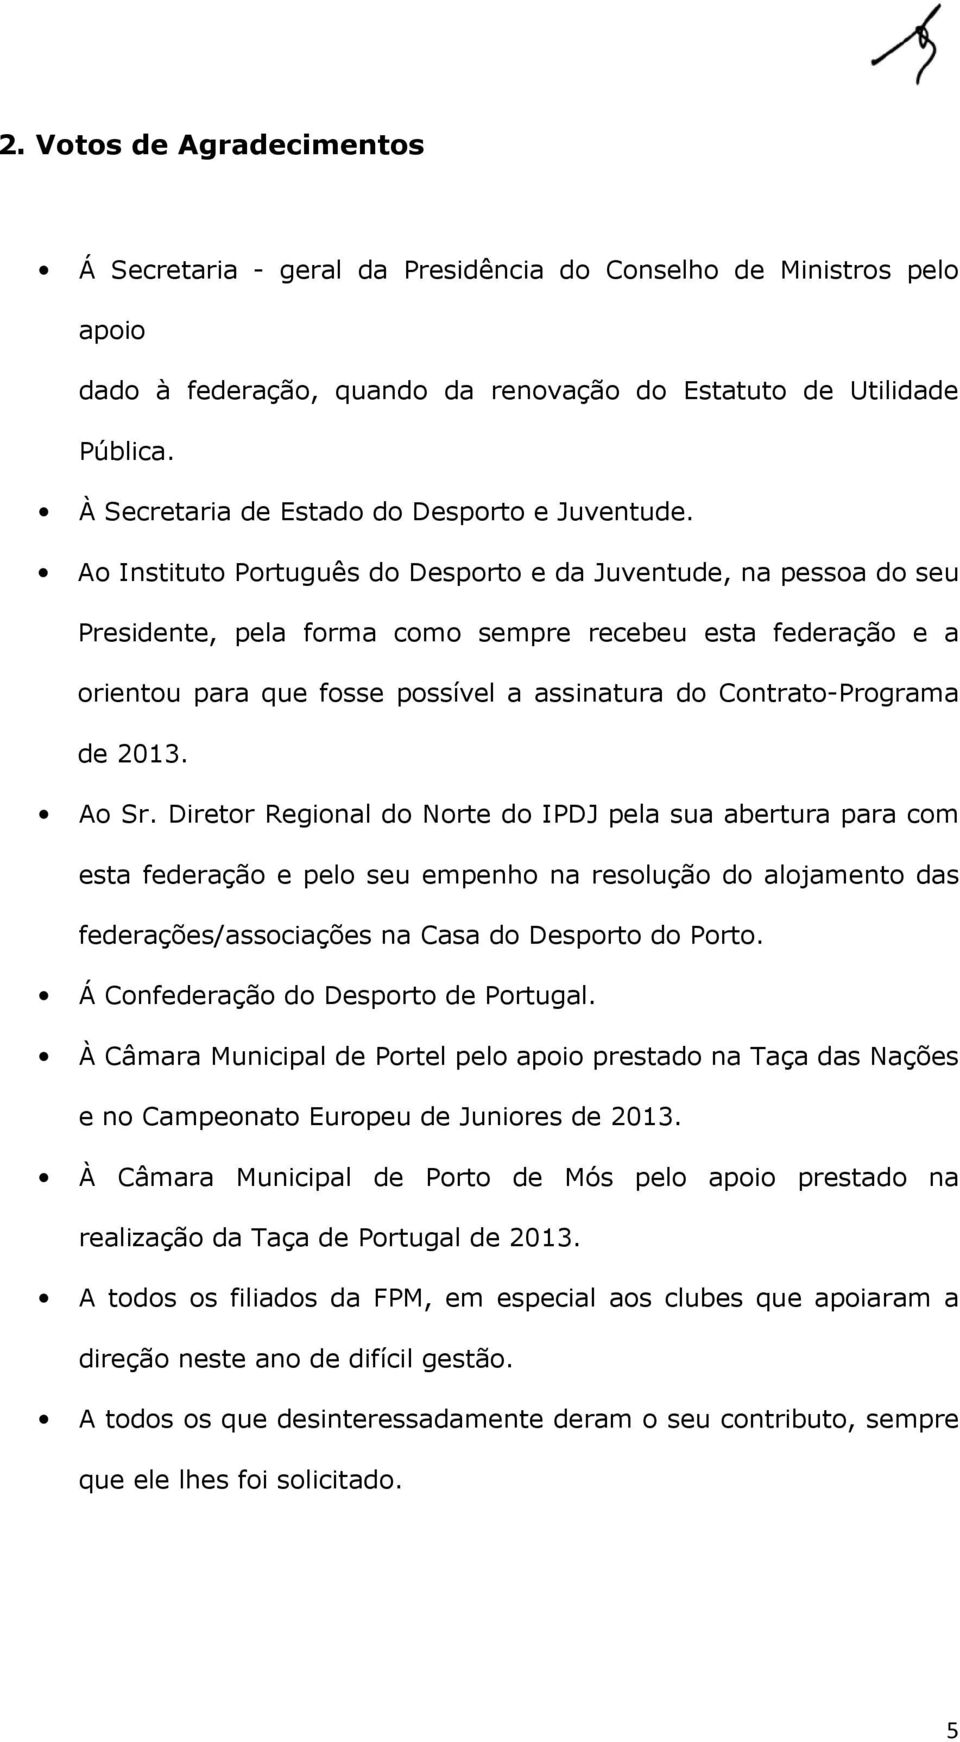 Ao Instituto Português do Desporto e da Juventude, na pessoa do seu Presidente, pela forma como sempre recebeu esta federação e a orientou para que fosse possível a assinatura do Contrato-Programa de